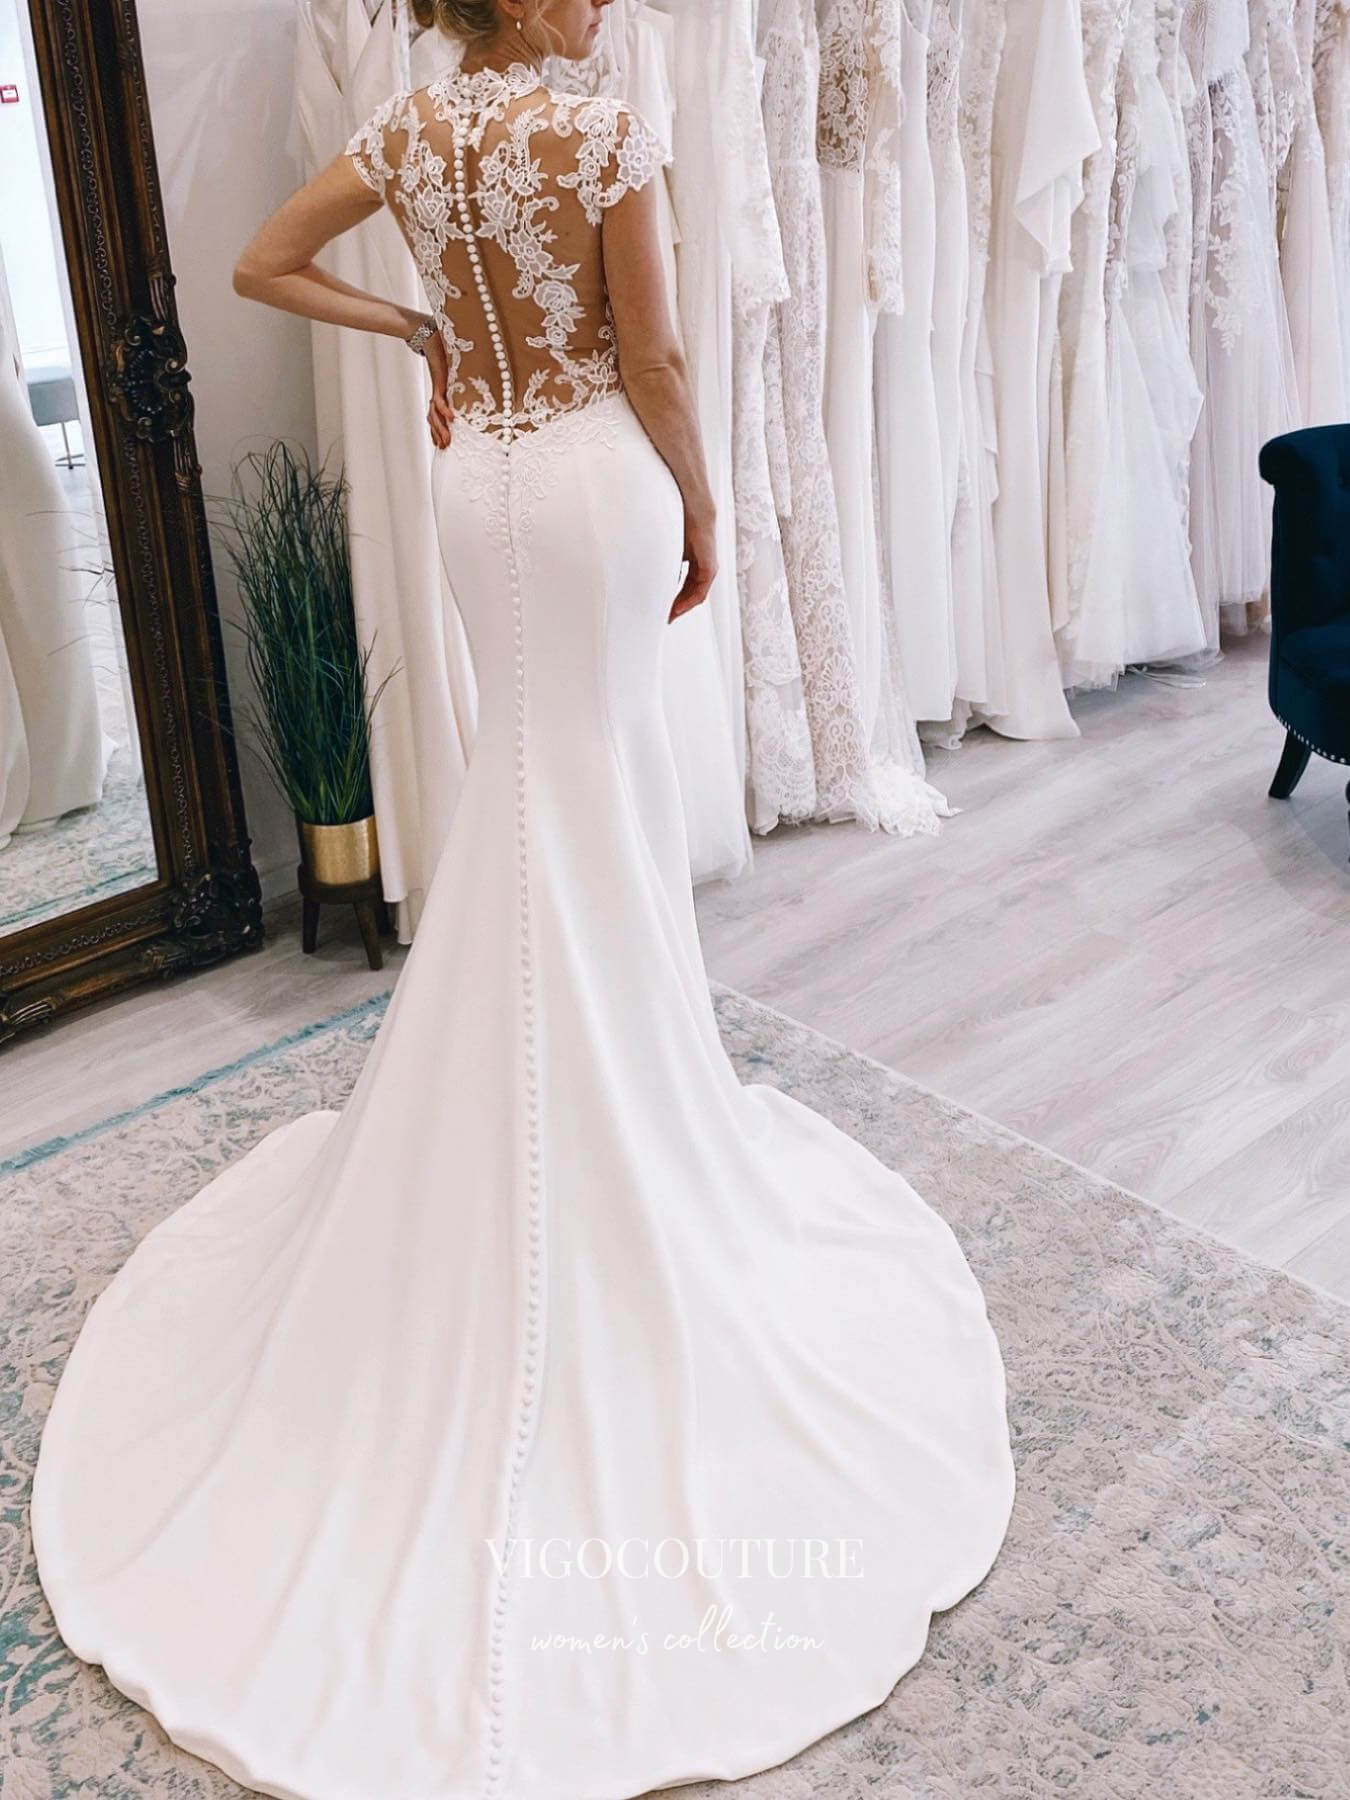 vigocouture-Lace Applique Mermaid Wedding Dresses Cap Sleeve Bridal Dresses W0083-Wedding Dresses-vigocouture-